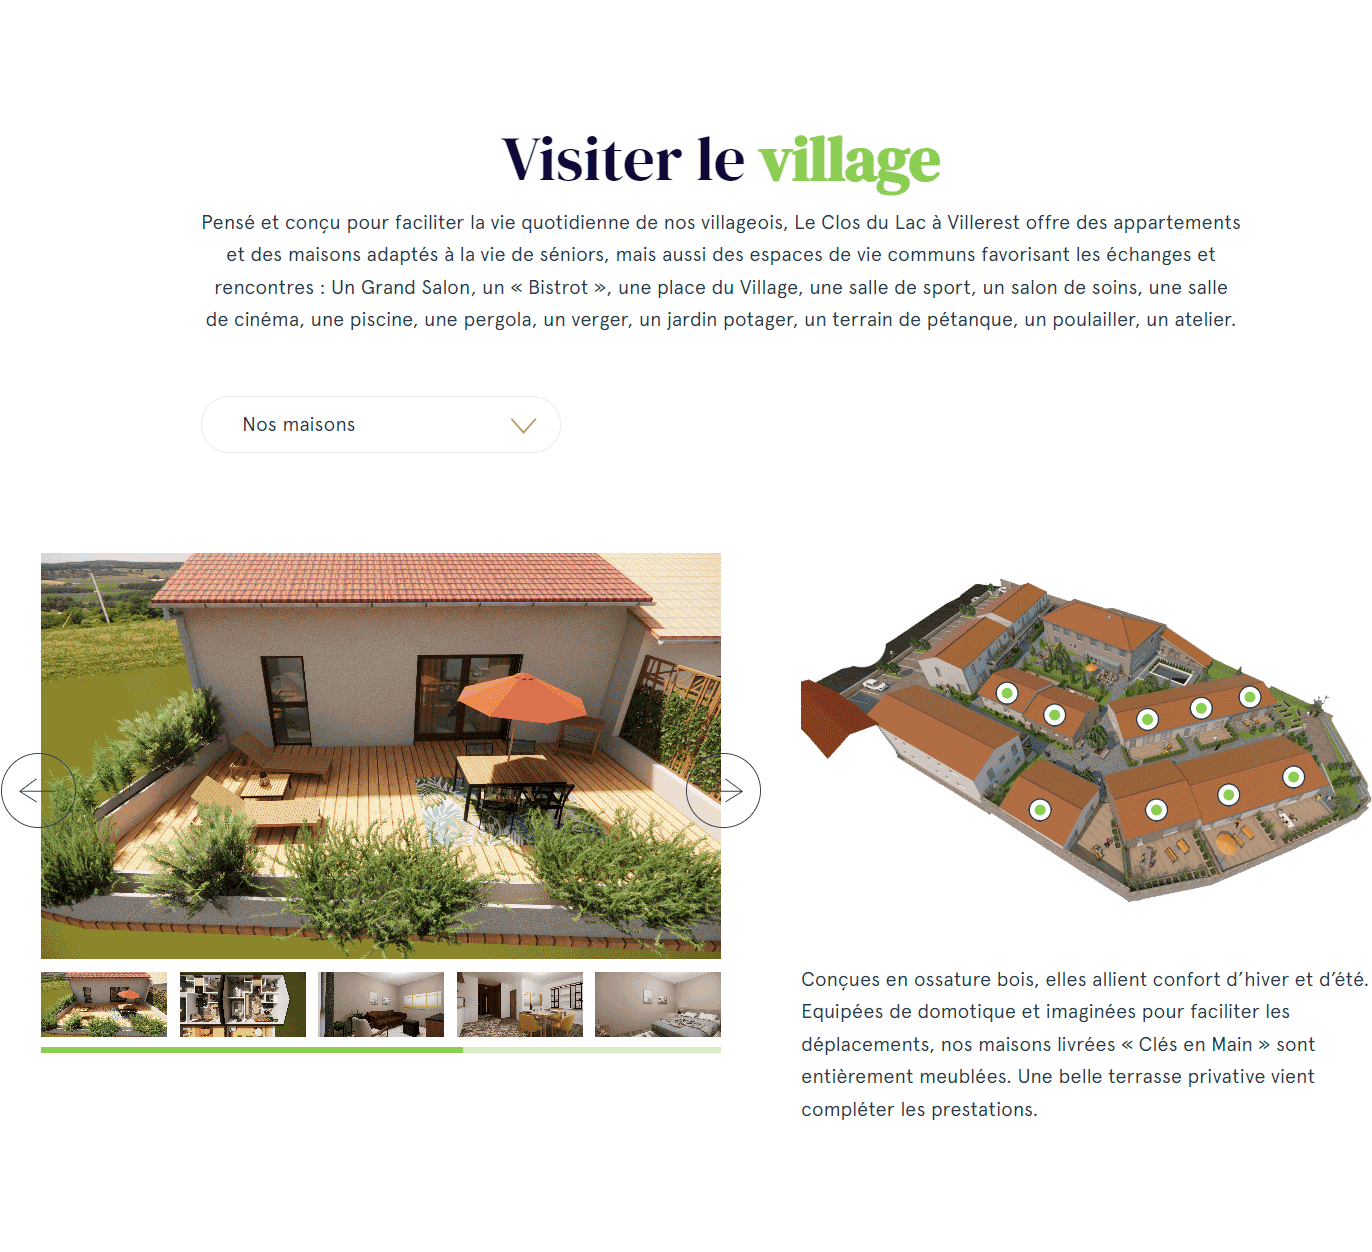 Visite d'un village sénior site web